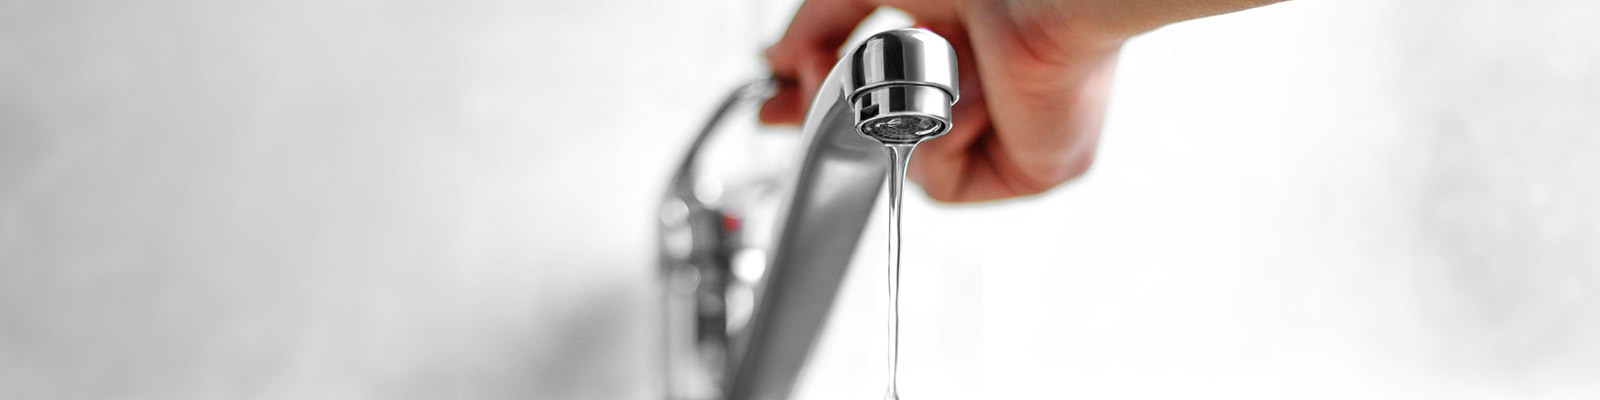 Consejos para el ahorro de agua en casa